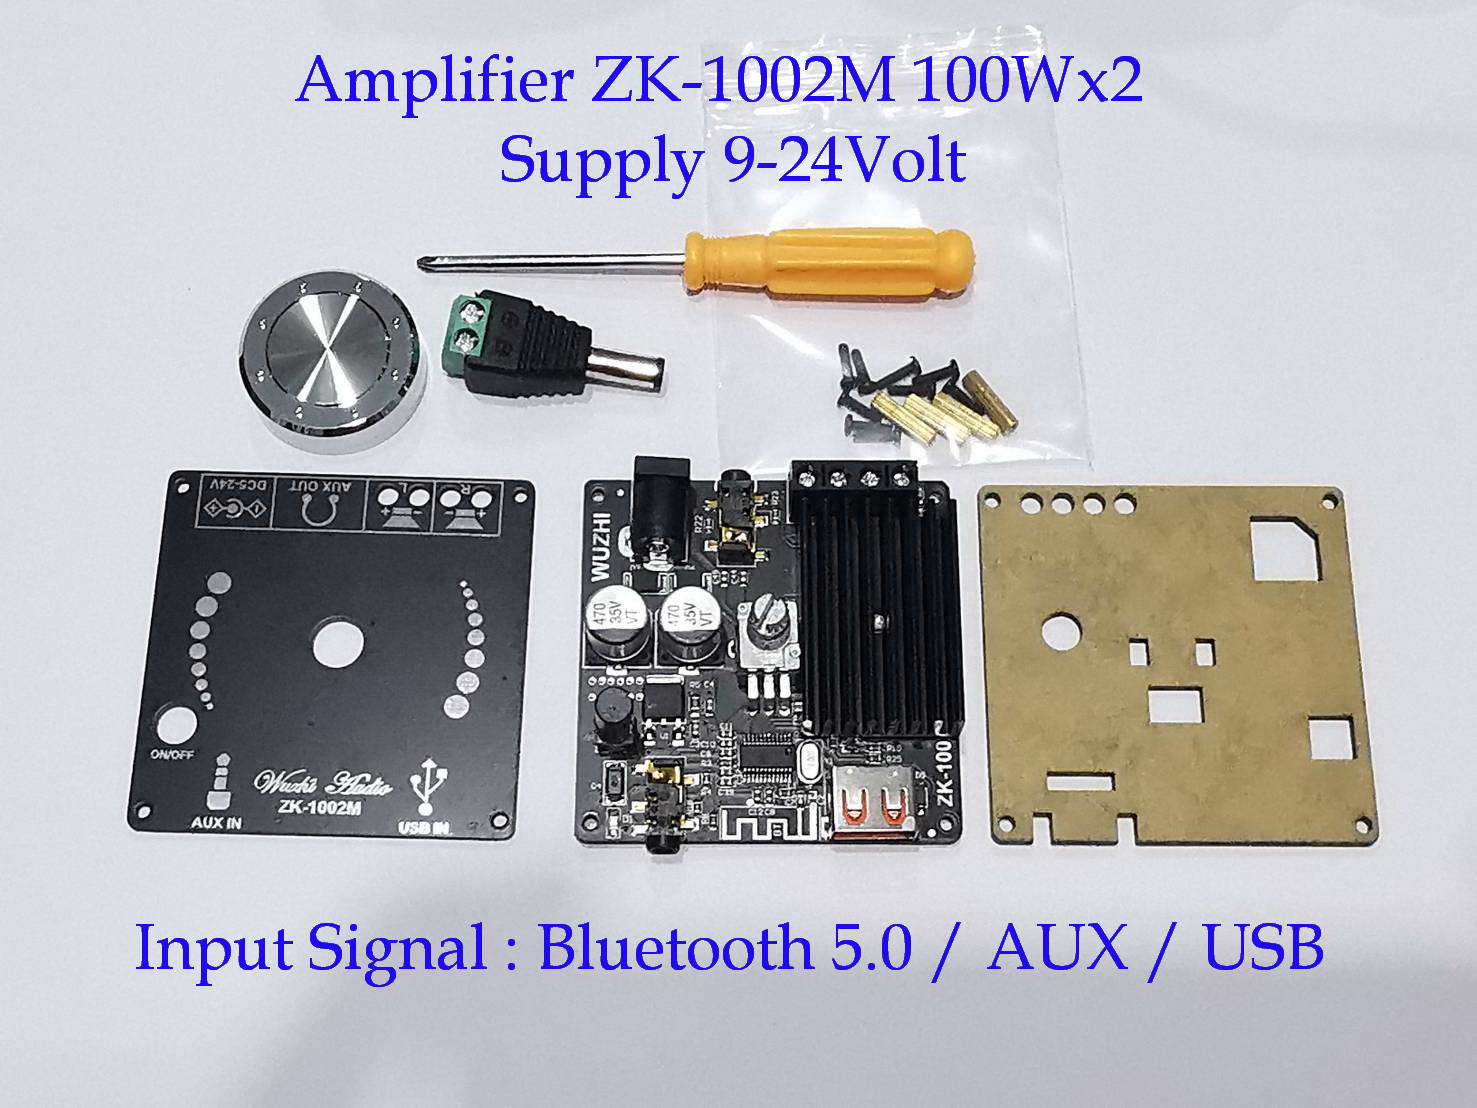 บอร์ดเครื่องขยายเสียง 2Ch. 100Wx2 .มี2รุ่น 1.)ZK-1002L มีBluetooth5.0อย่างเดียว  2.)ZK-1002M มีBluetooth,AUX ,USB / Supply 9-24 Volt DC. *Digital Power Audio Amplifier board 100W X2 (2Model 1.)ZK-1002L /2.)ZK-1002M